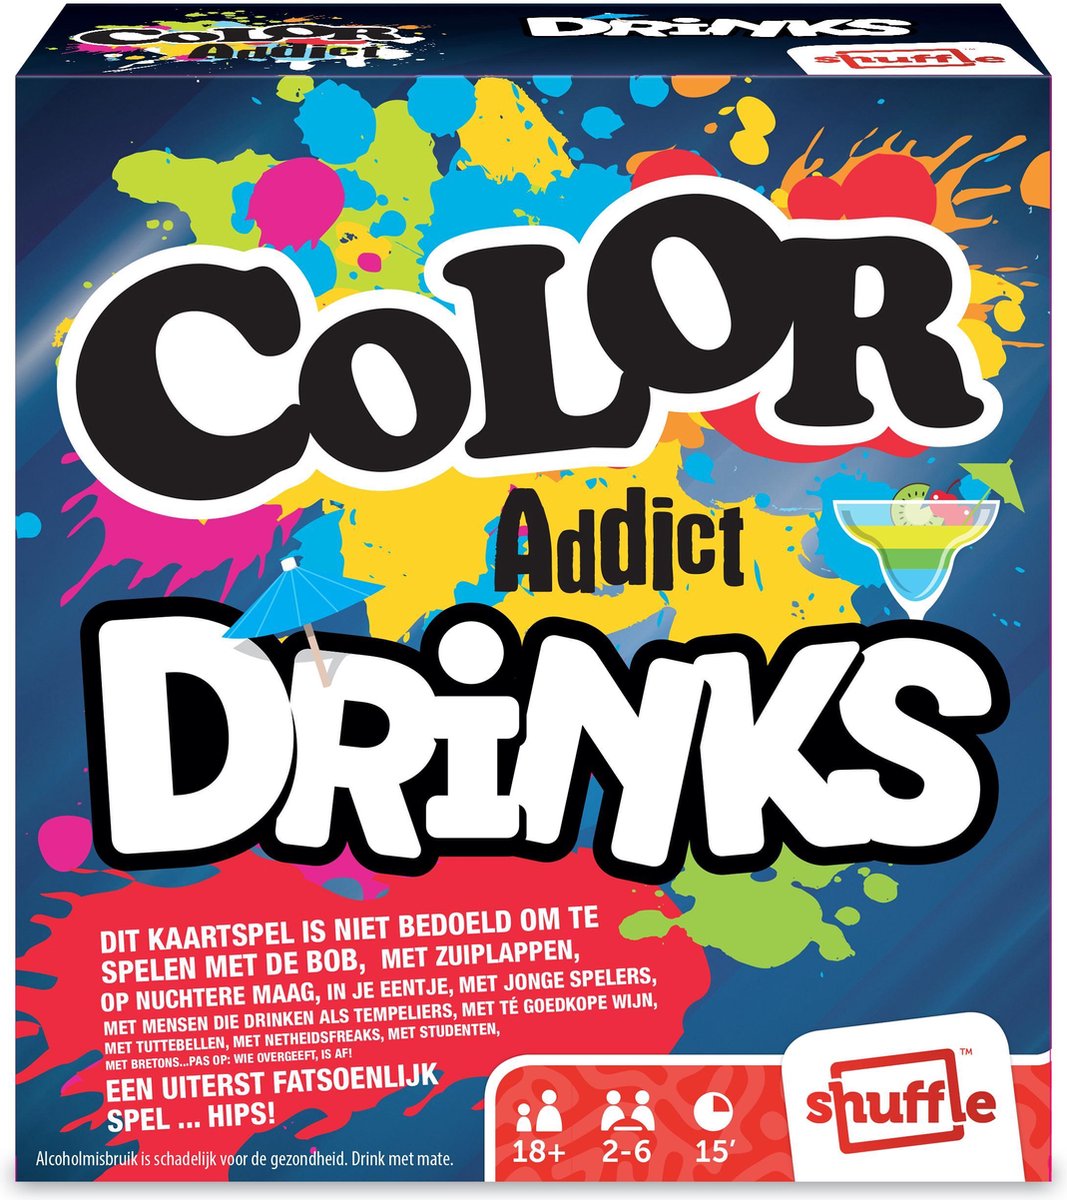 Shuffle - Color Addict Drinks - Kaartspel - Familiespel - Nederlands